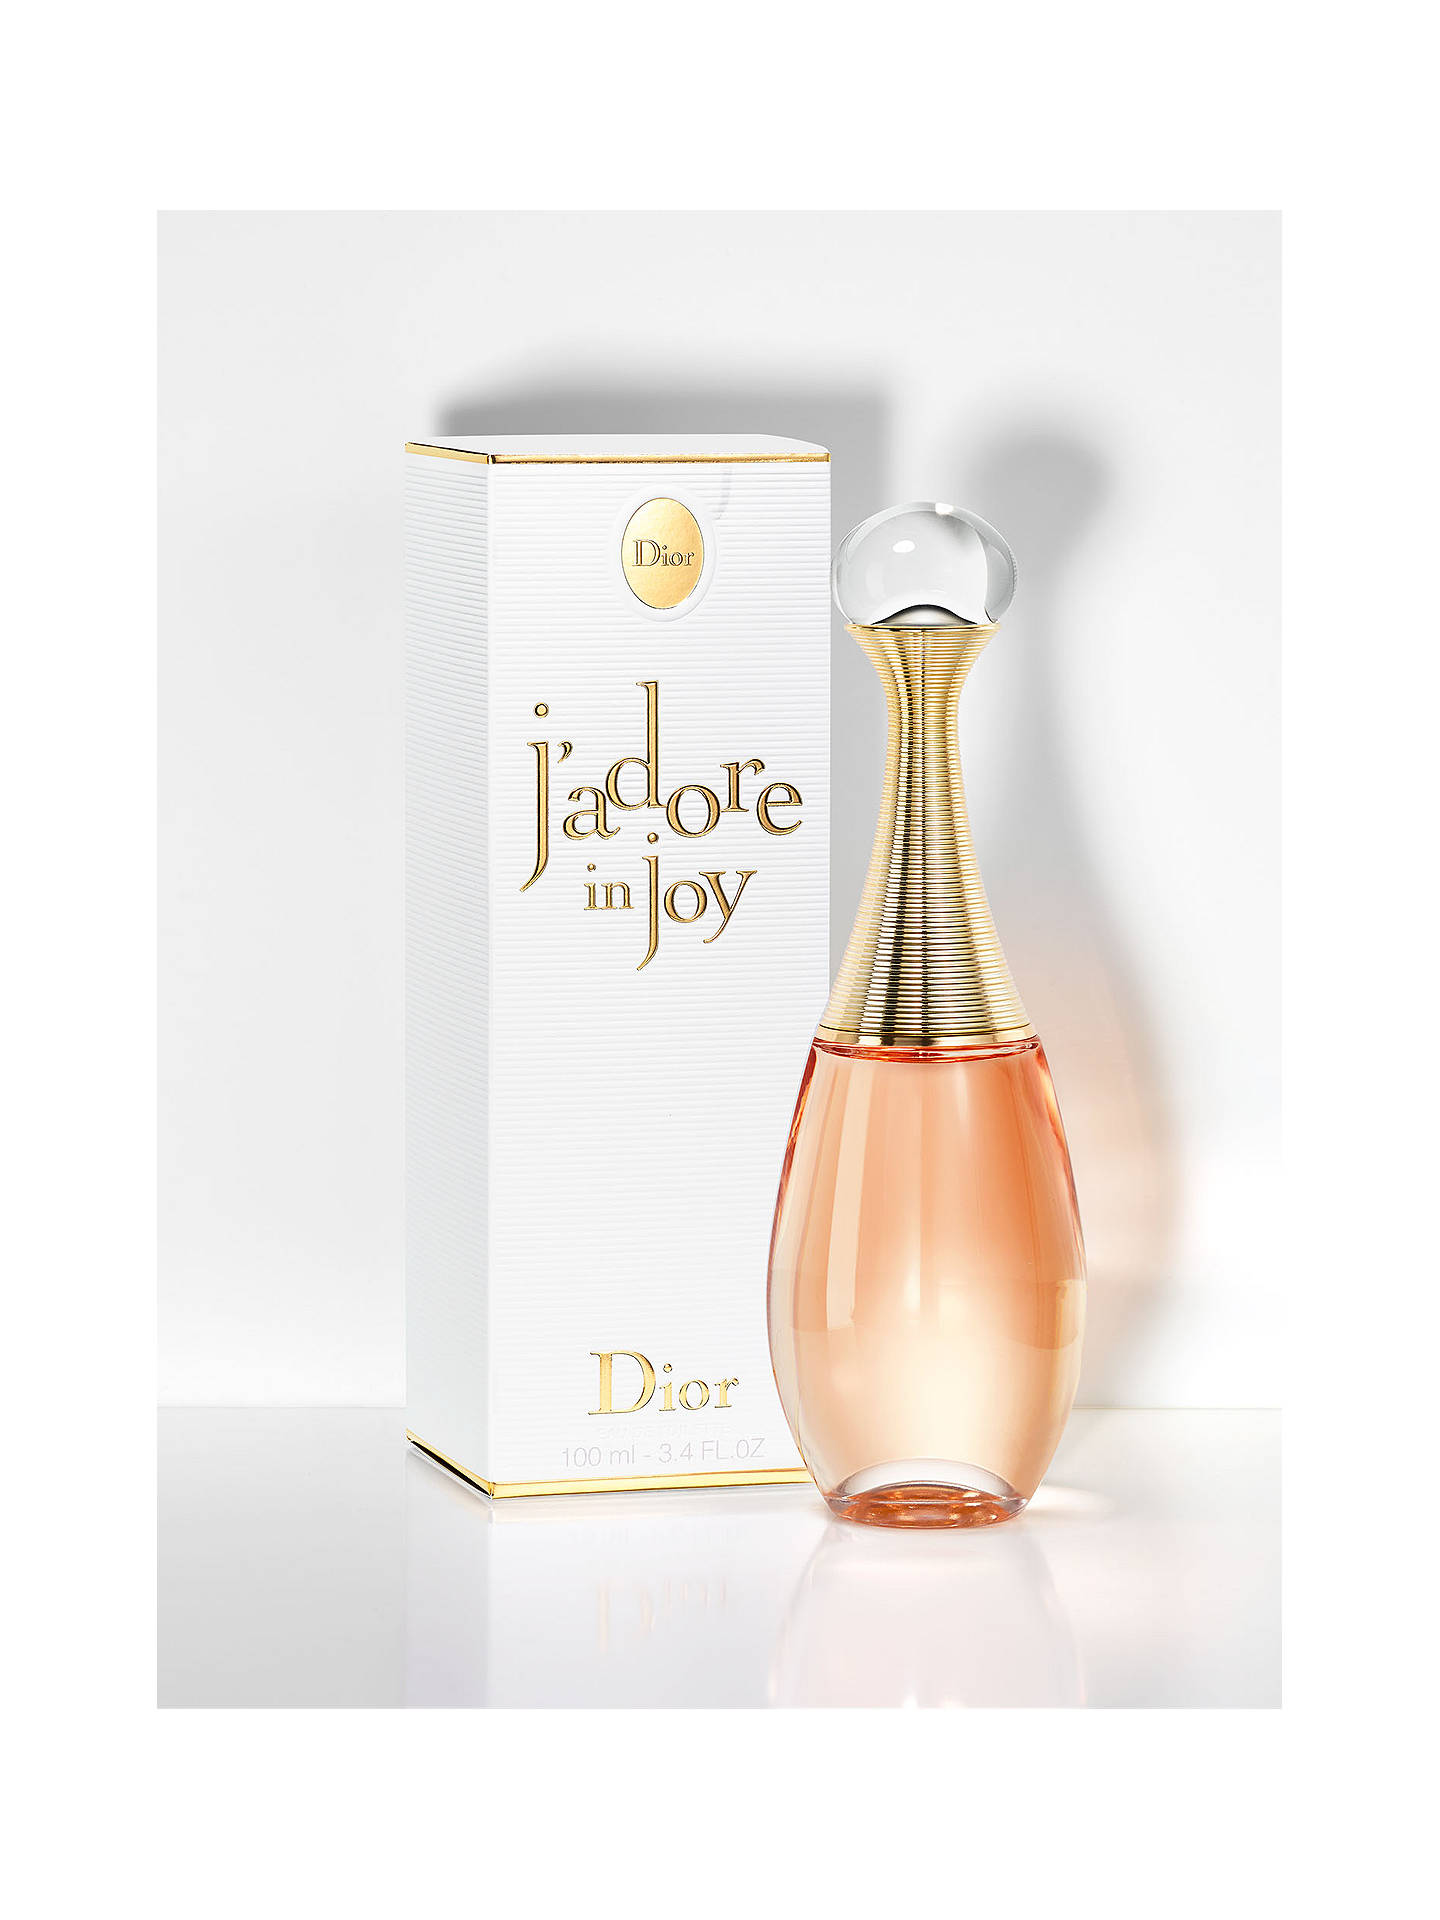 Dior J'adore in joy Eau de Toilette at John Lewis & Partners